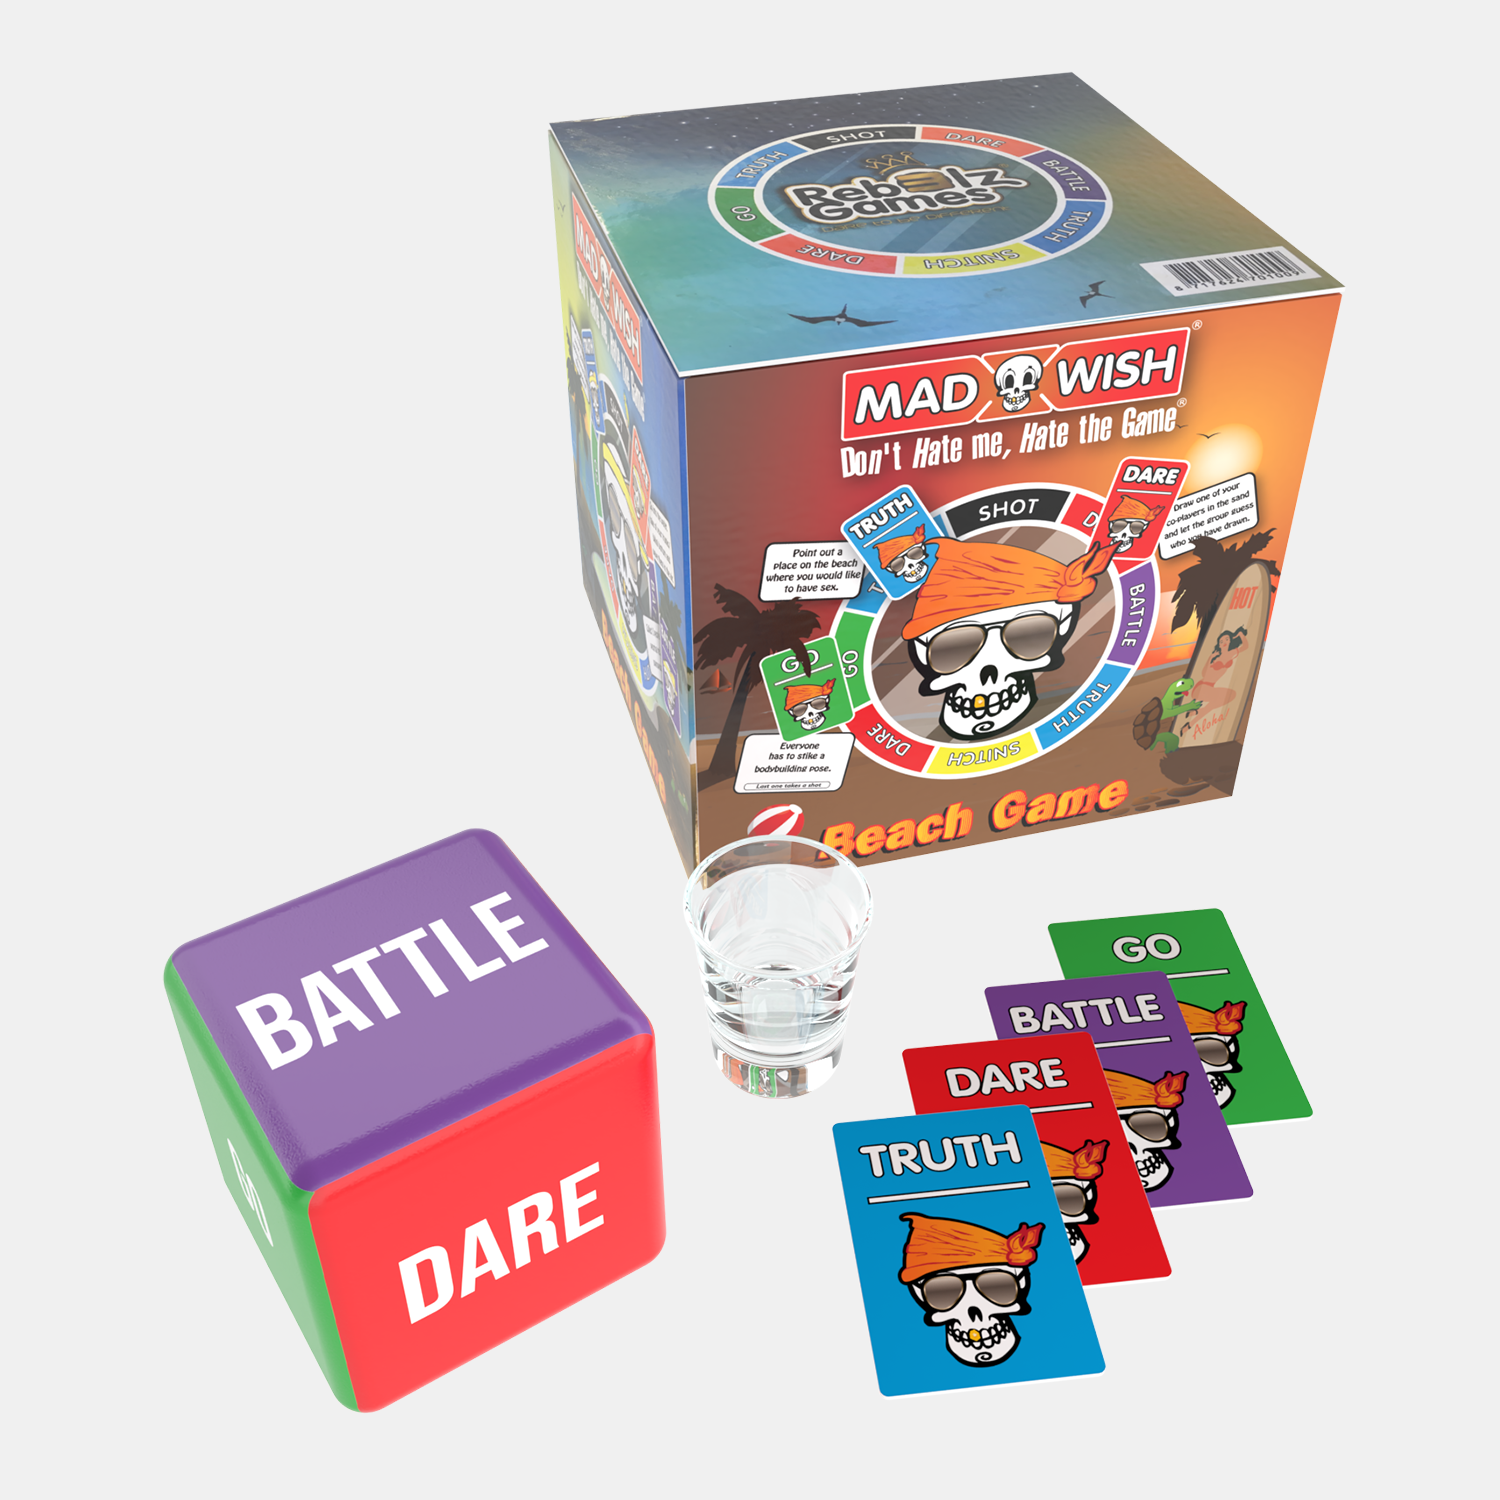 Madwish Beach Game - Truth or Dare - do or drink - drankspel - spelletjes voor volwassenen - bordspel - shotglaasje inbegrepen.